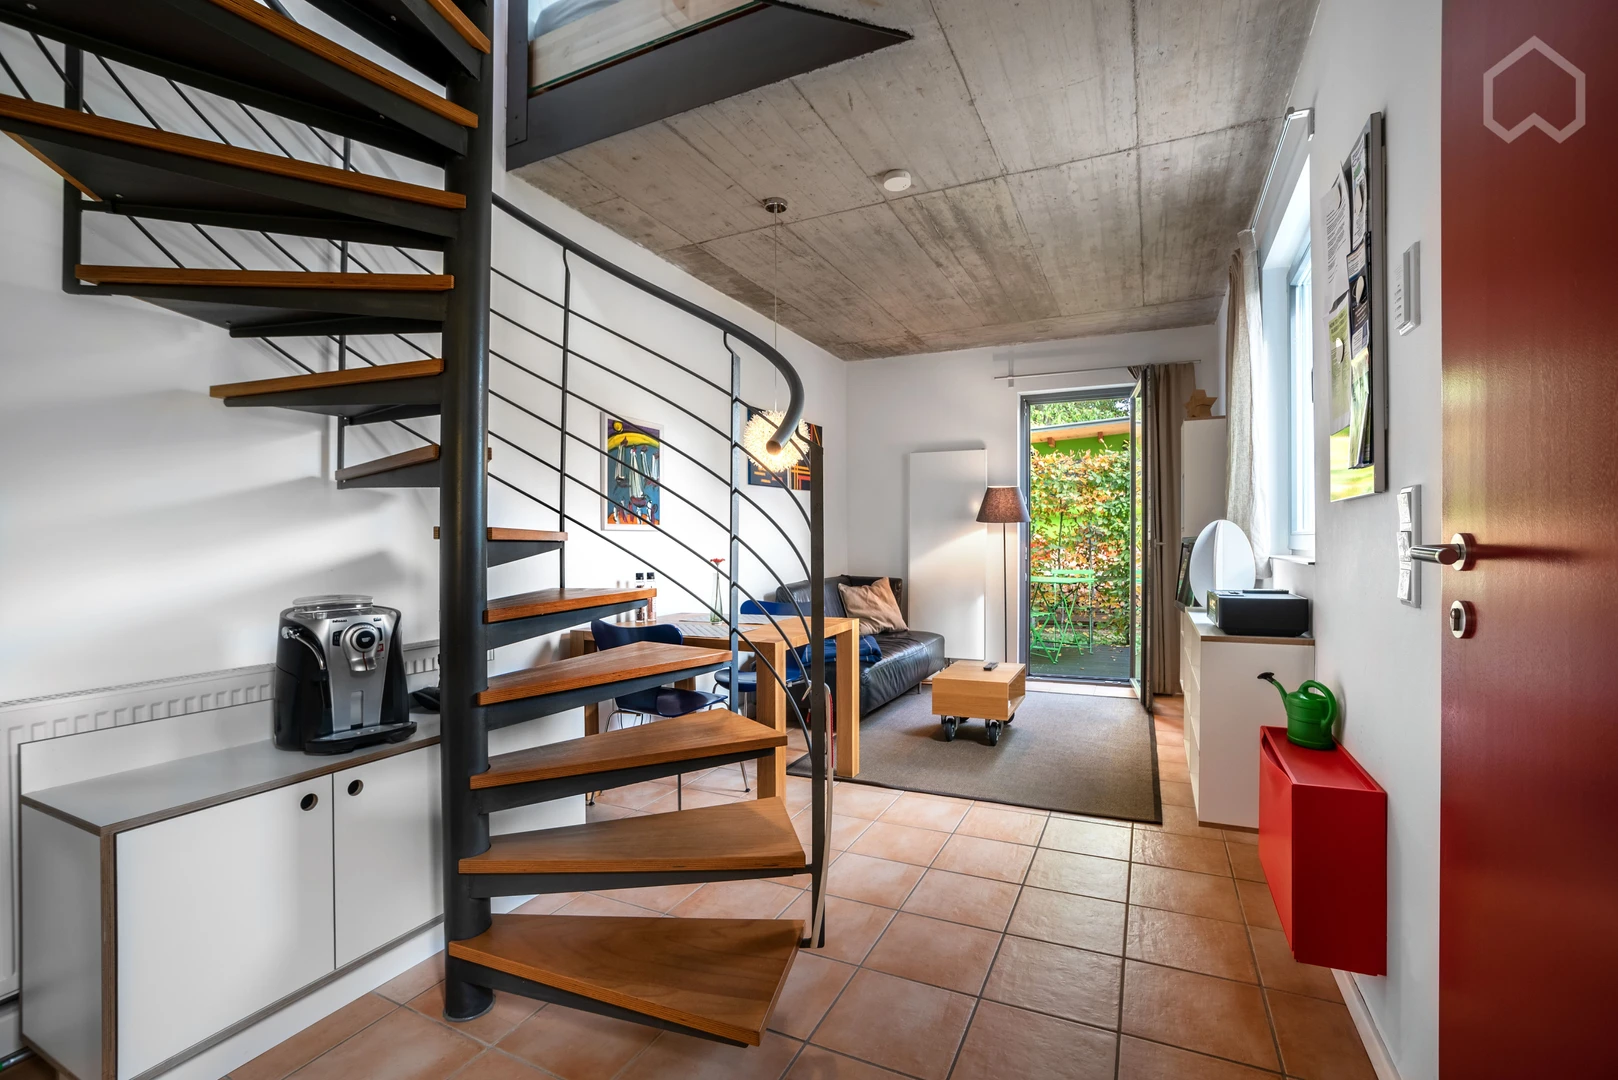 Alquiler de habitación en piso compartido en Darmstadt